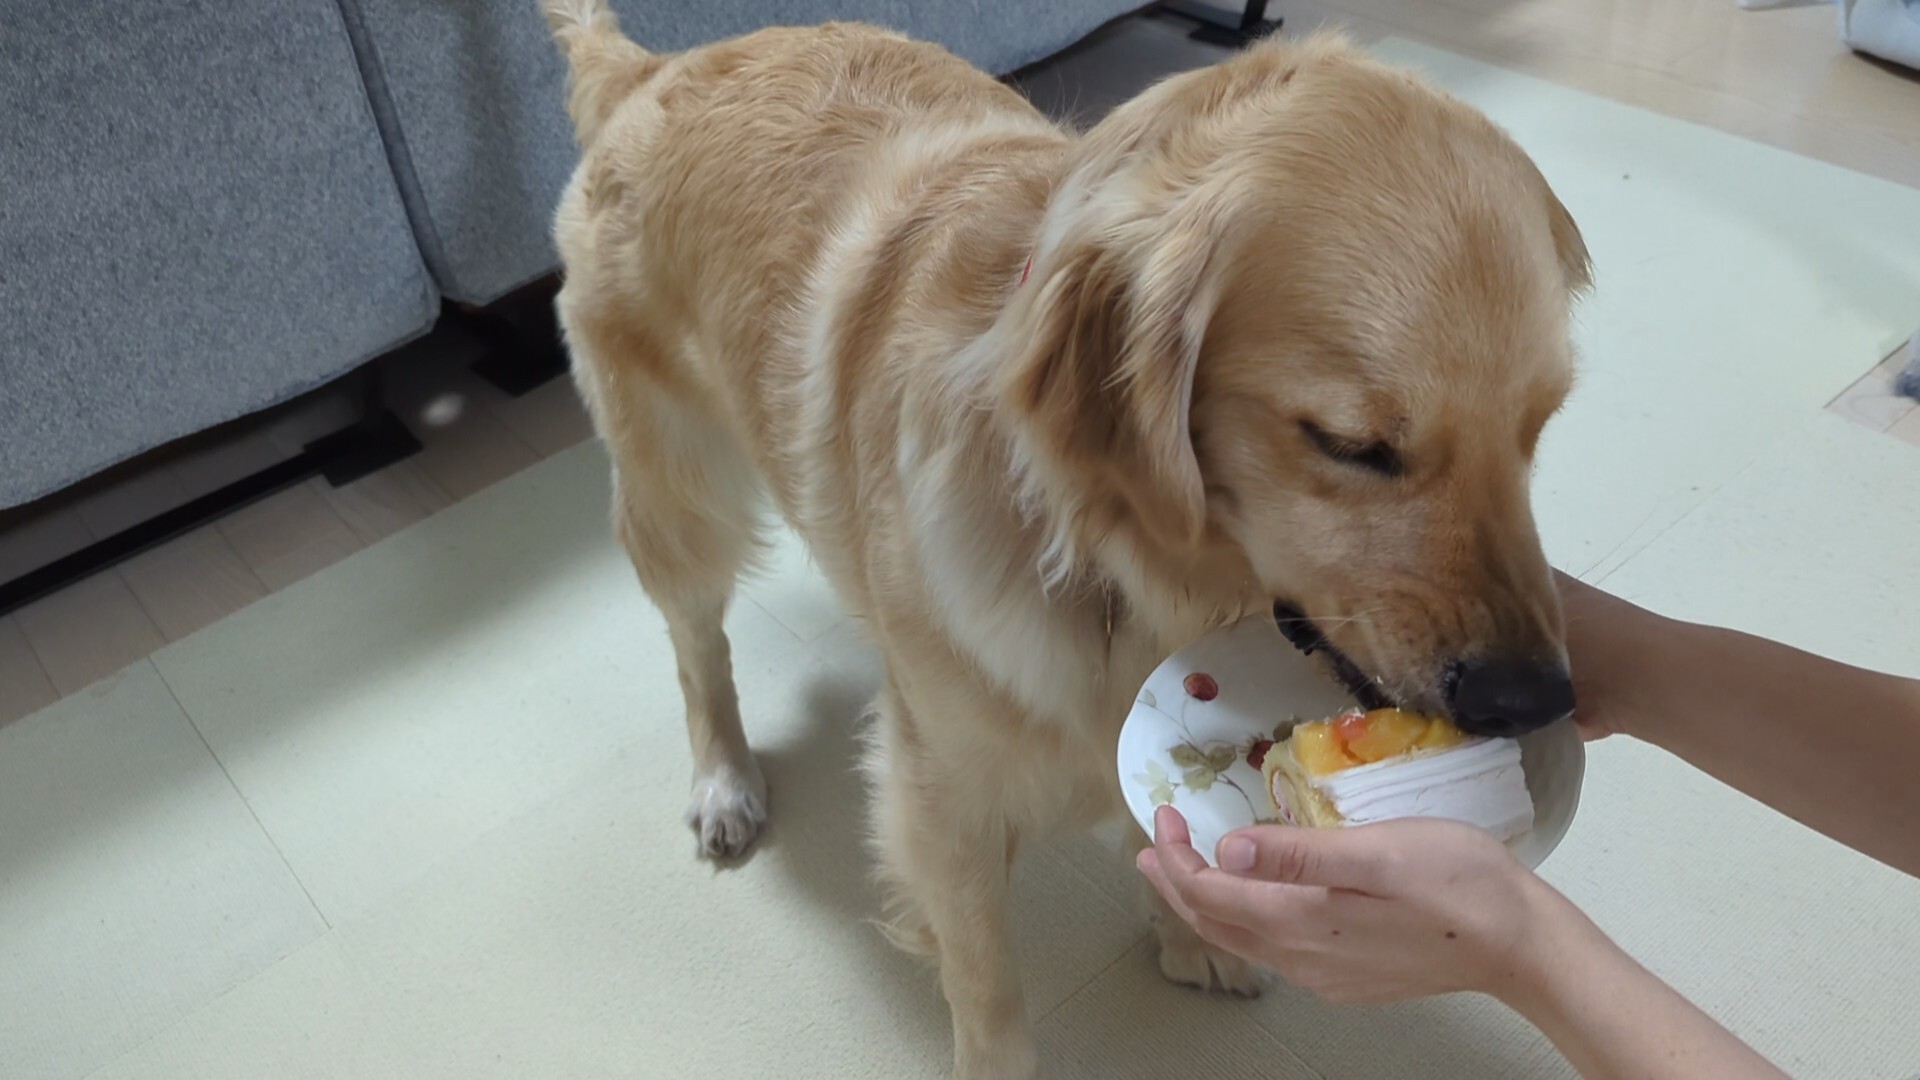 皿に置かれた犬用ケーキを食べているゴールデンレトリーバー。人が食べやすいように皿を持って口に近づけている